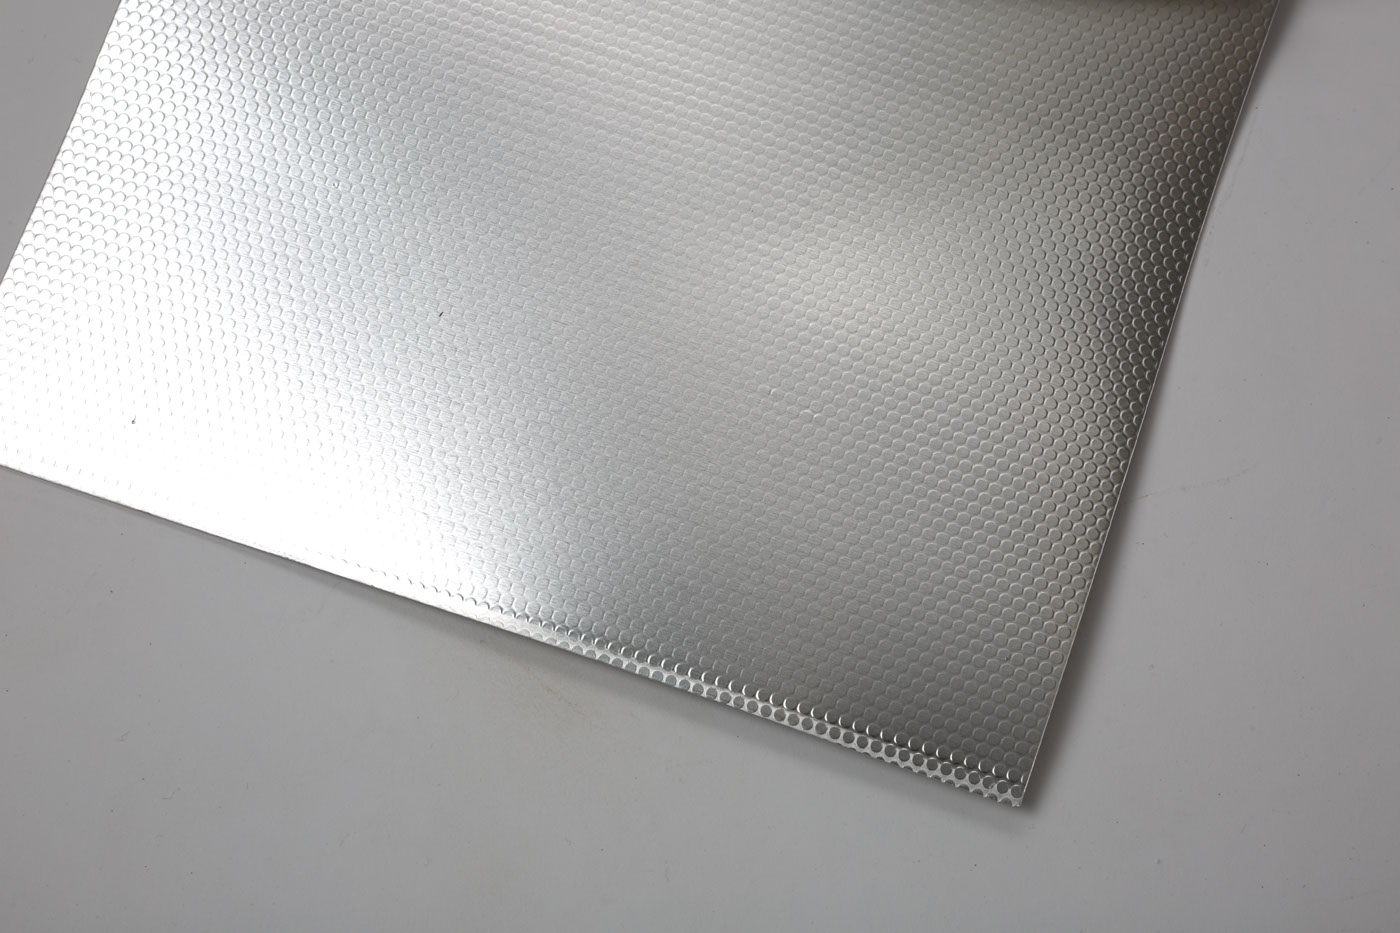 Aluminiumblech
Aluminium sheet
Tôle d'aluminium